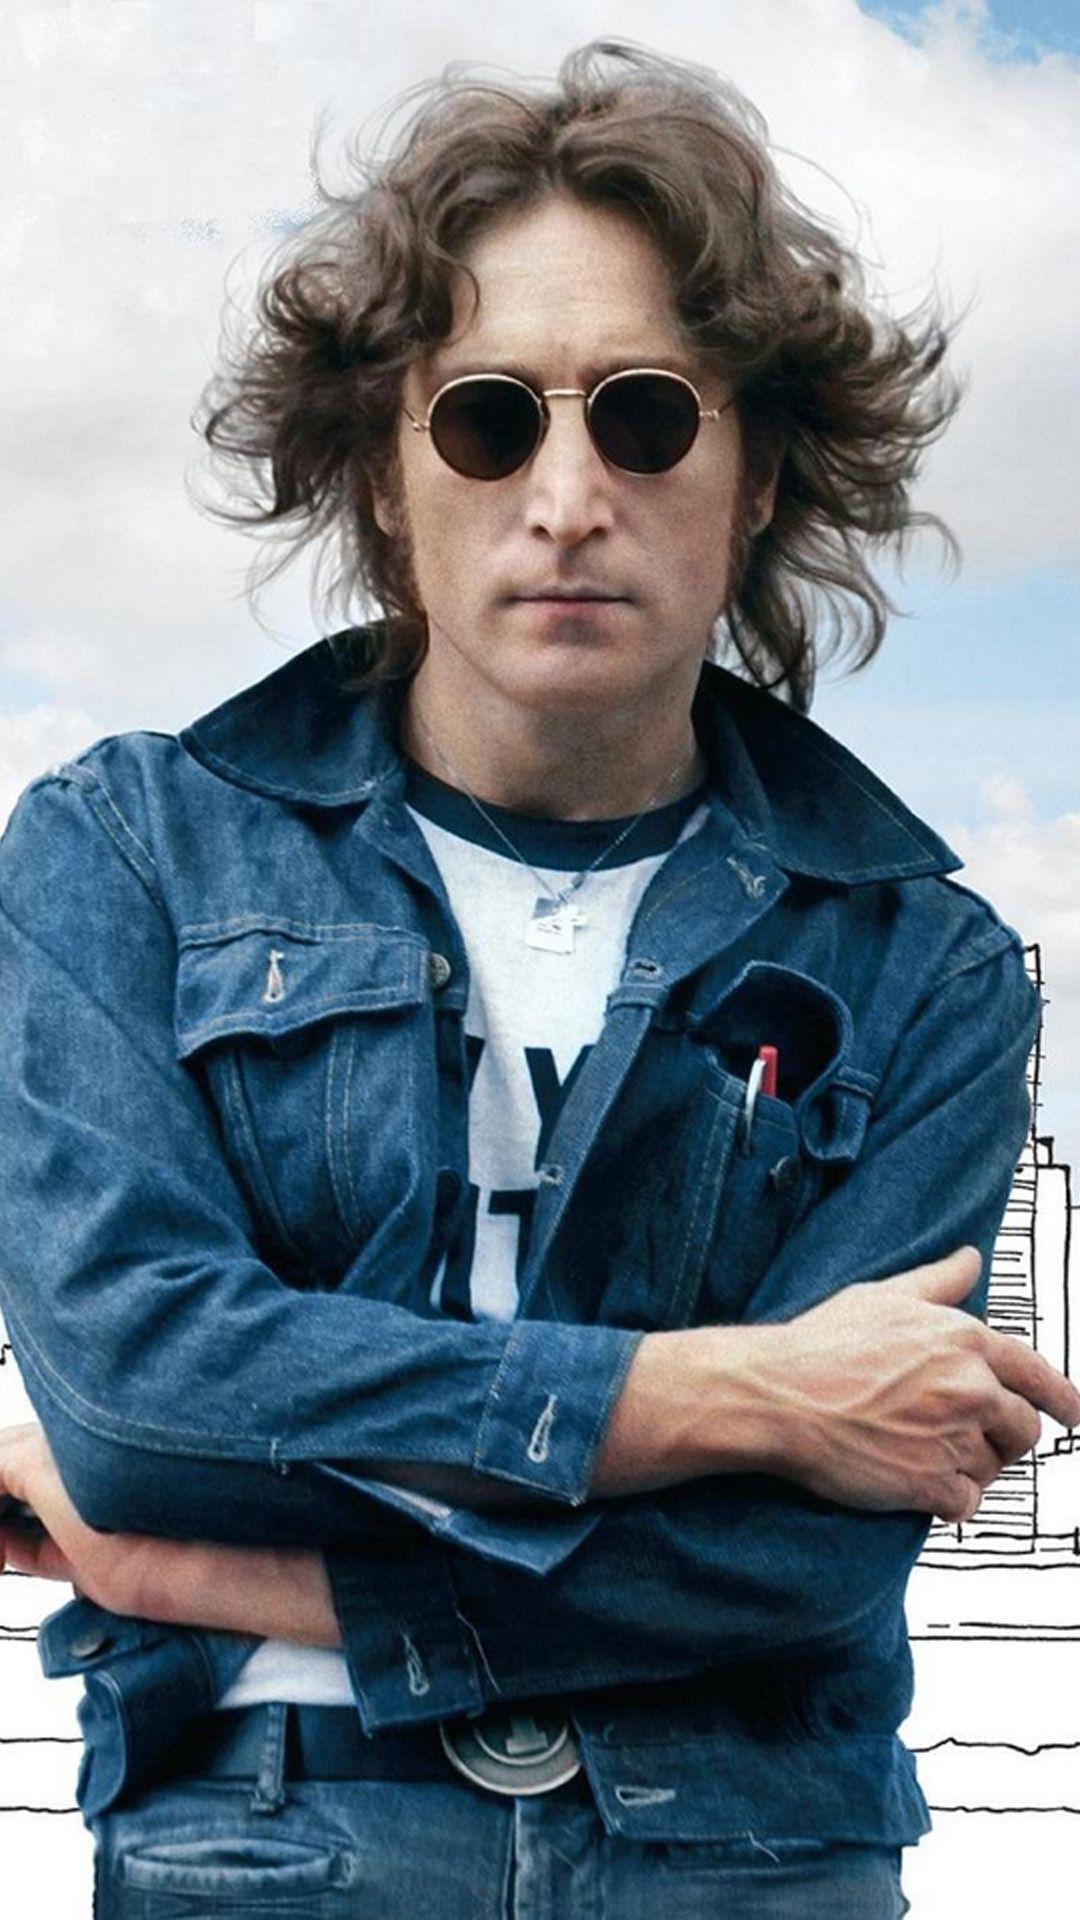 John Lennon Wallpaper, HDQ John Lennon Image Collection